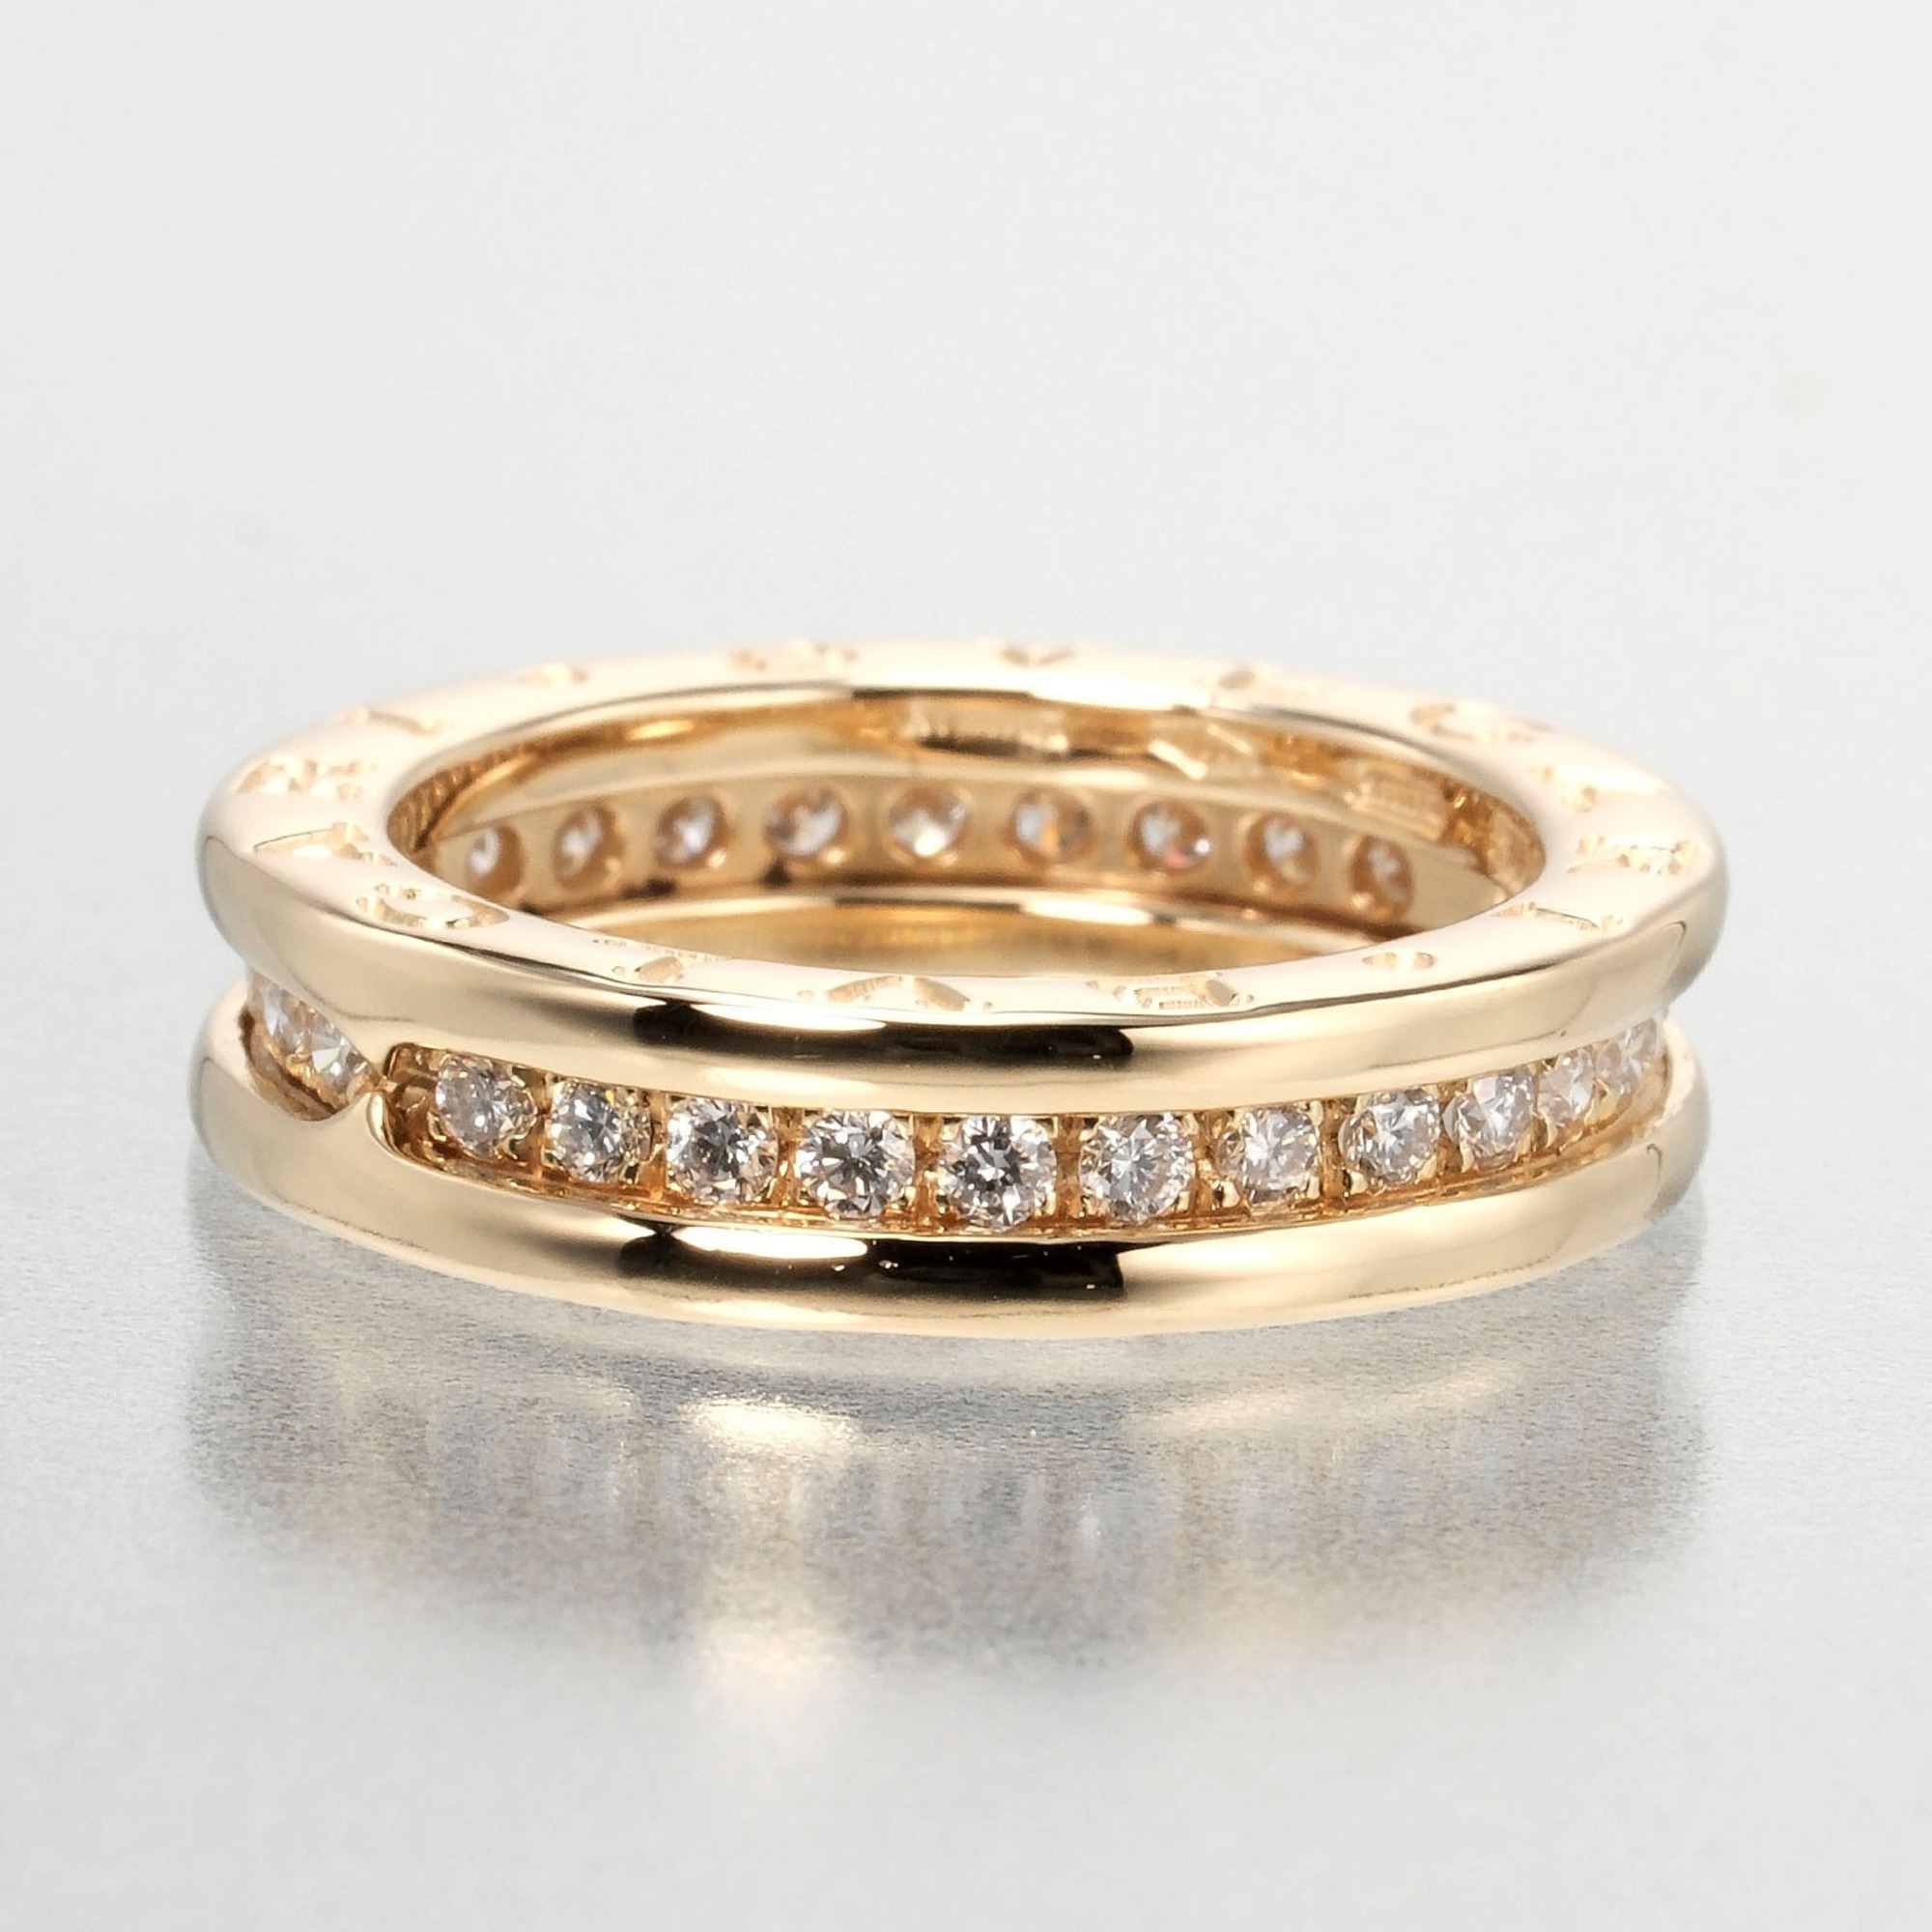 Bvlgari B.ZERO1 XS 1 Band Ring Size 8.5 6.8g K18 YG Yellow Gold Full Diamond BVLGARI